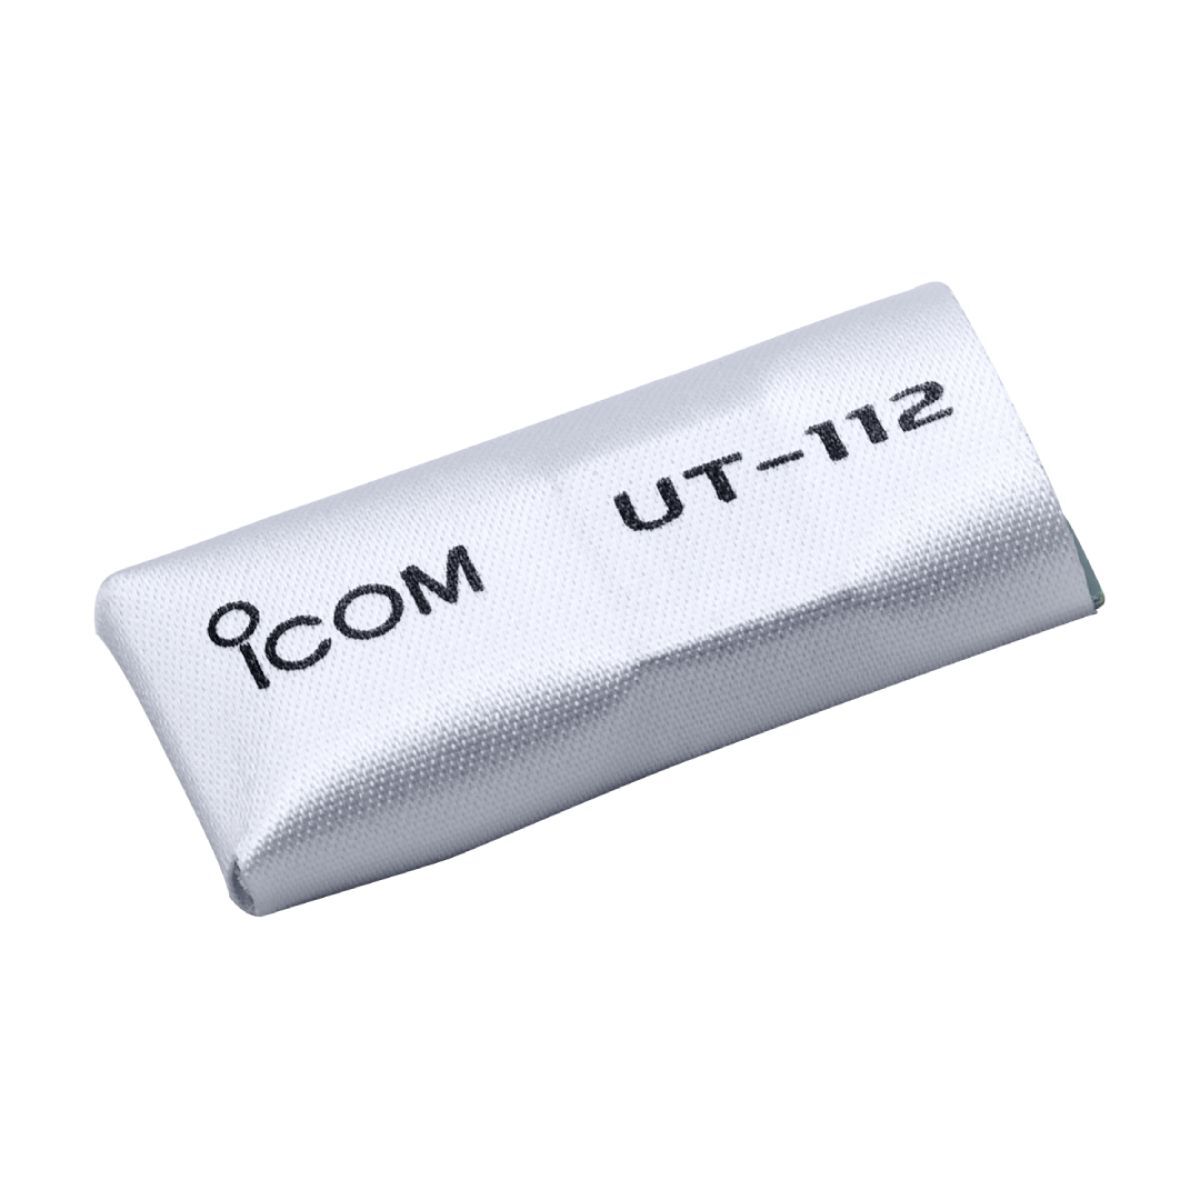 ICOM UT112 Voice Scrambler, 32 codes